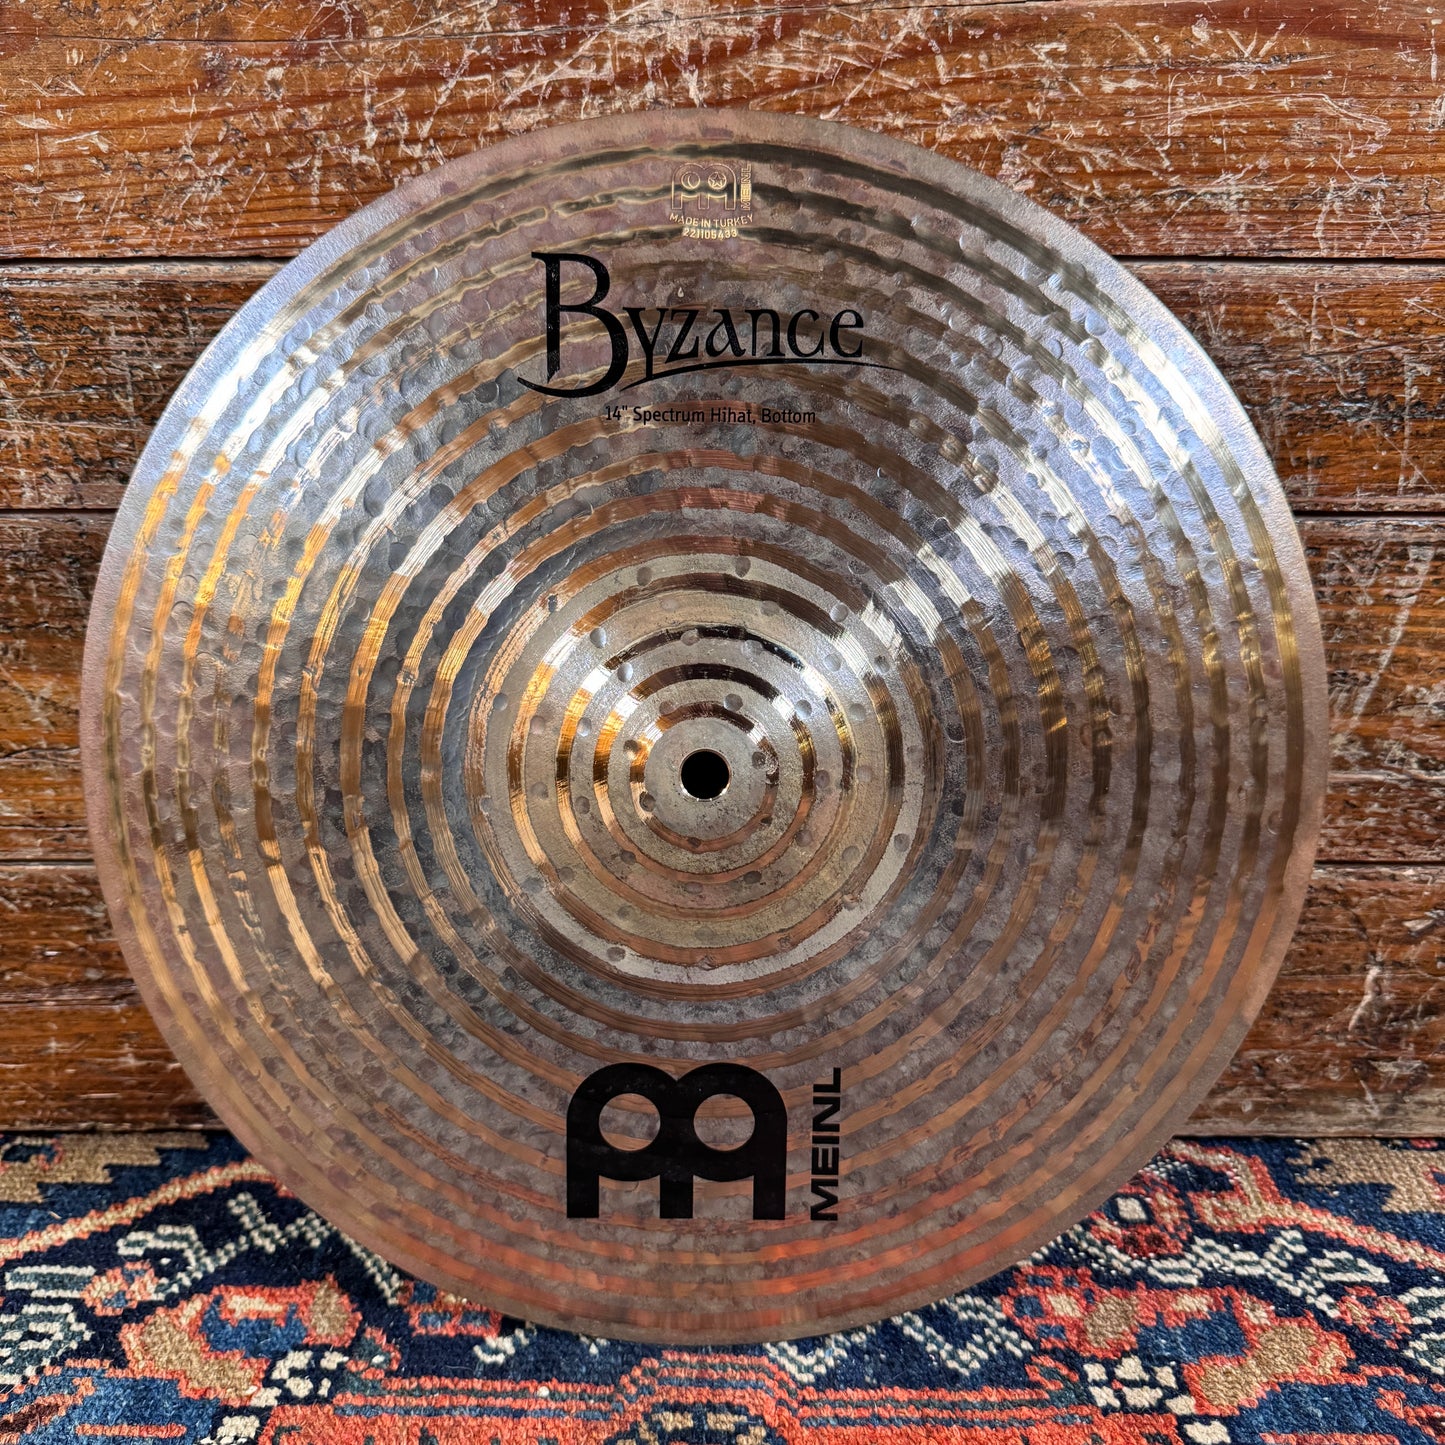 14" Meinl Byzance Dark Spectrum Hi-Hat Cymbal Pair 1134g/1532g *Video Demo*